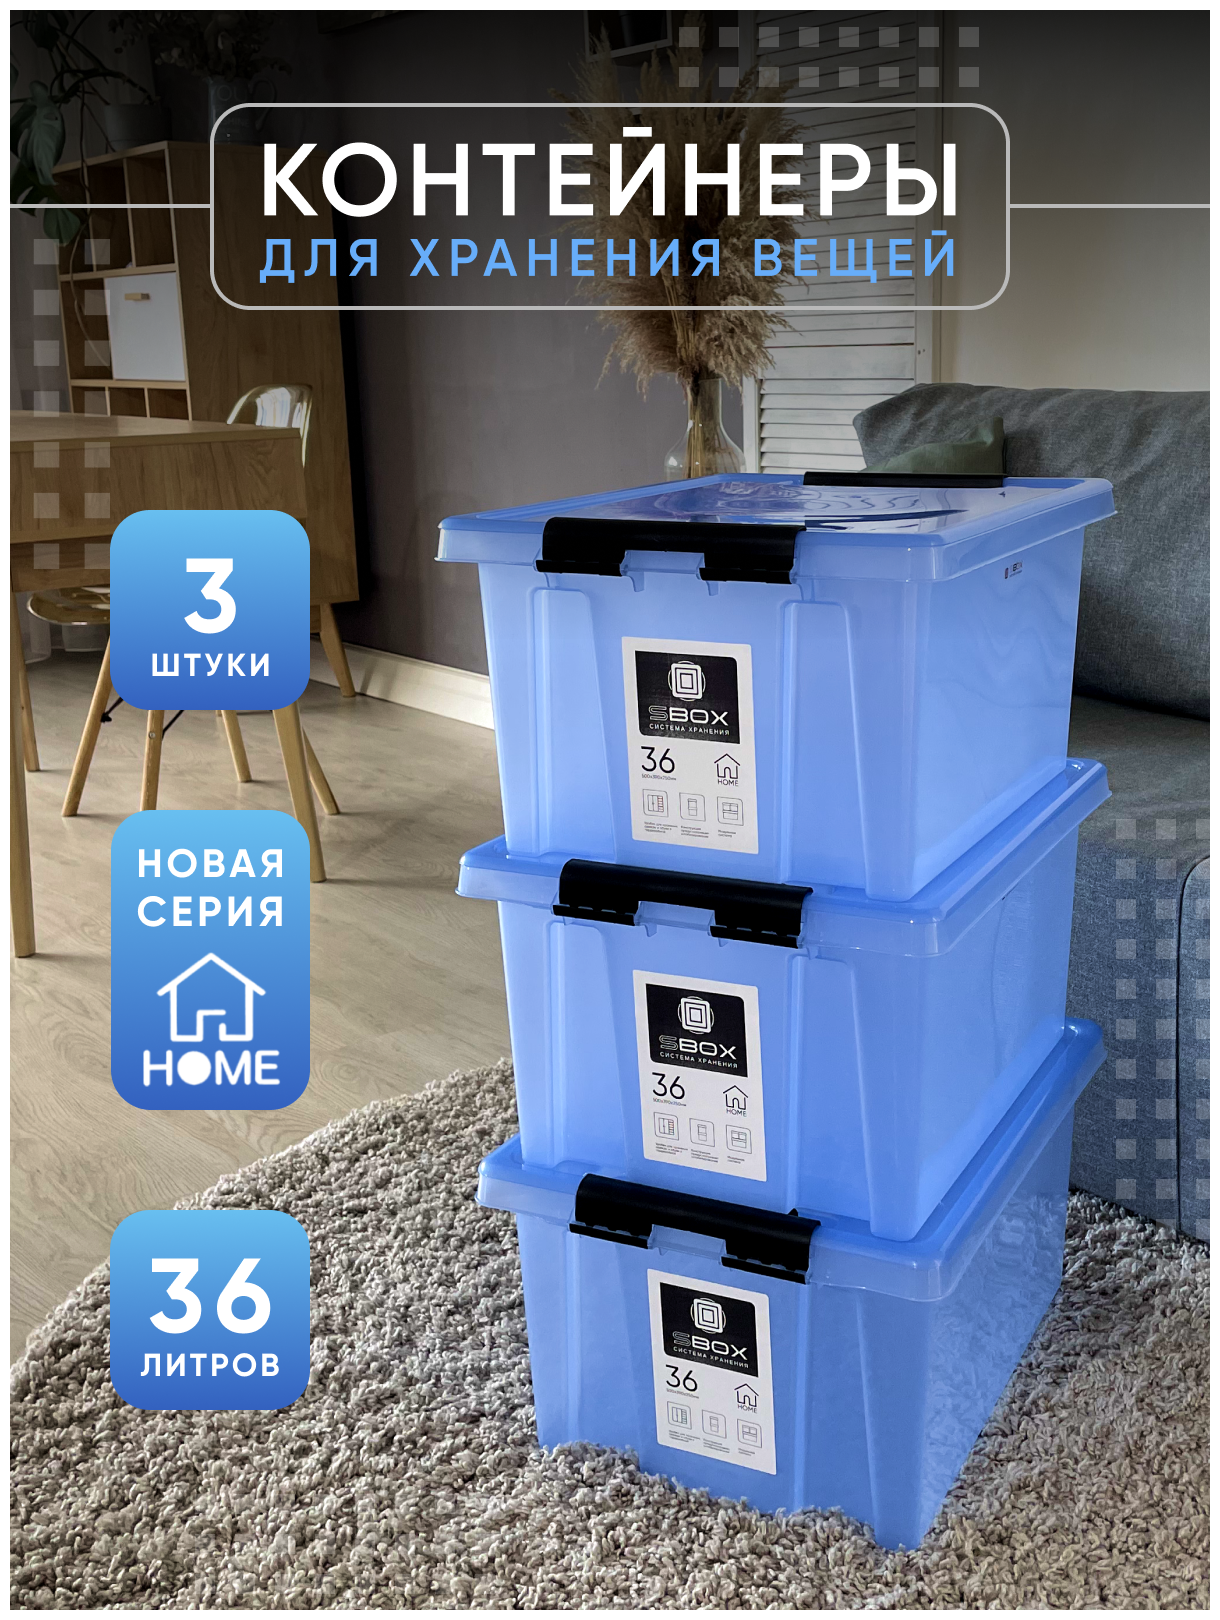 Контейнер пластиковый прозрачный синий с крышкой на защелках для хранения вещей, продуктов или игрушек, емкость 36л, набор 3 шт, SBOX